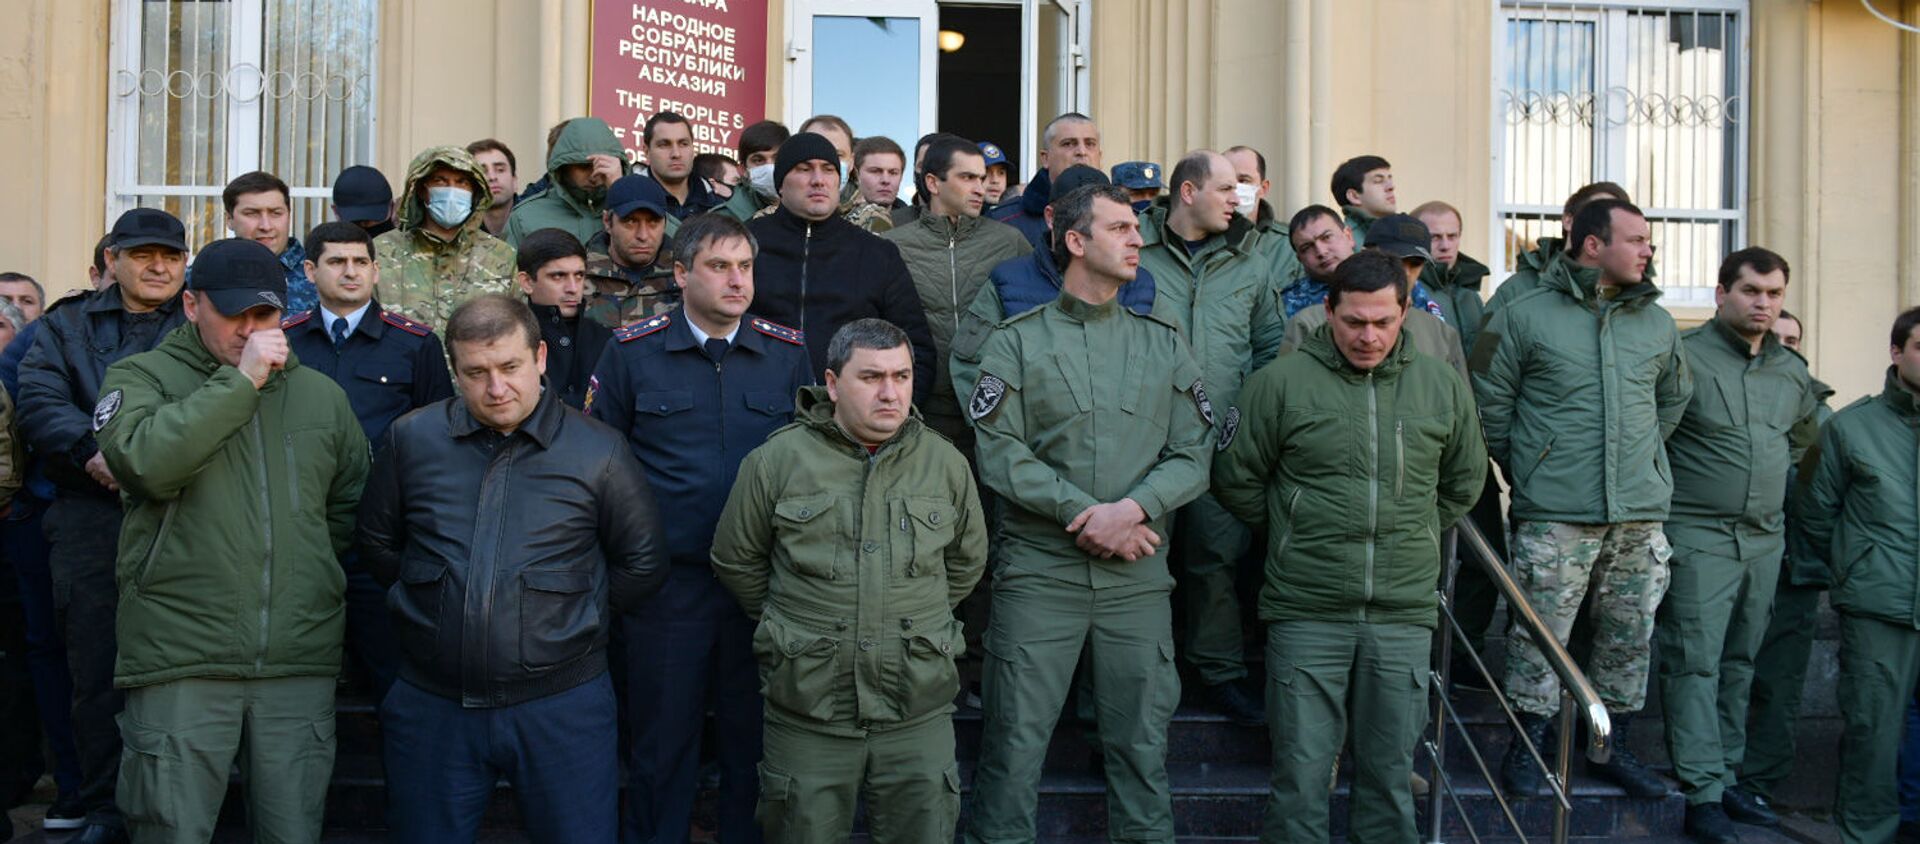 Митингующие у здания Парламента Абхазии - Sputnik Аҧсны, 1920, 02.03.2021